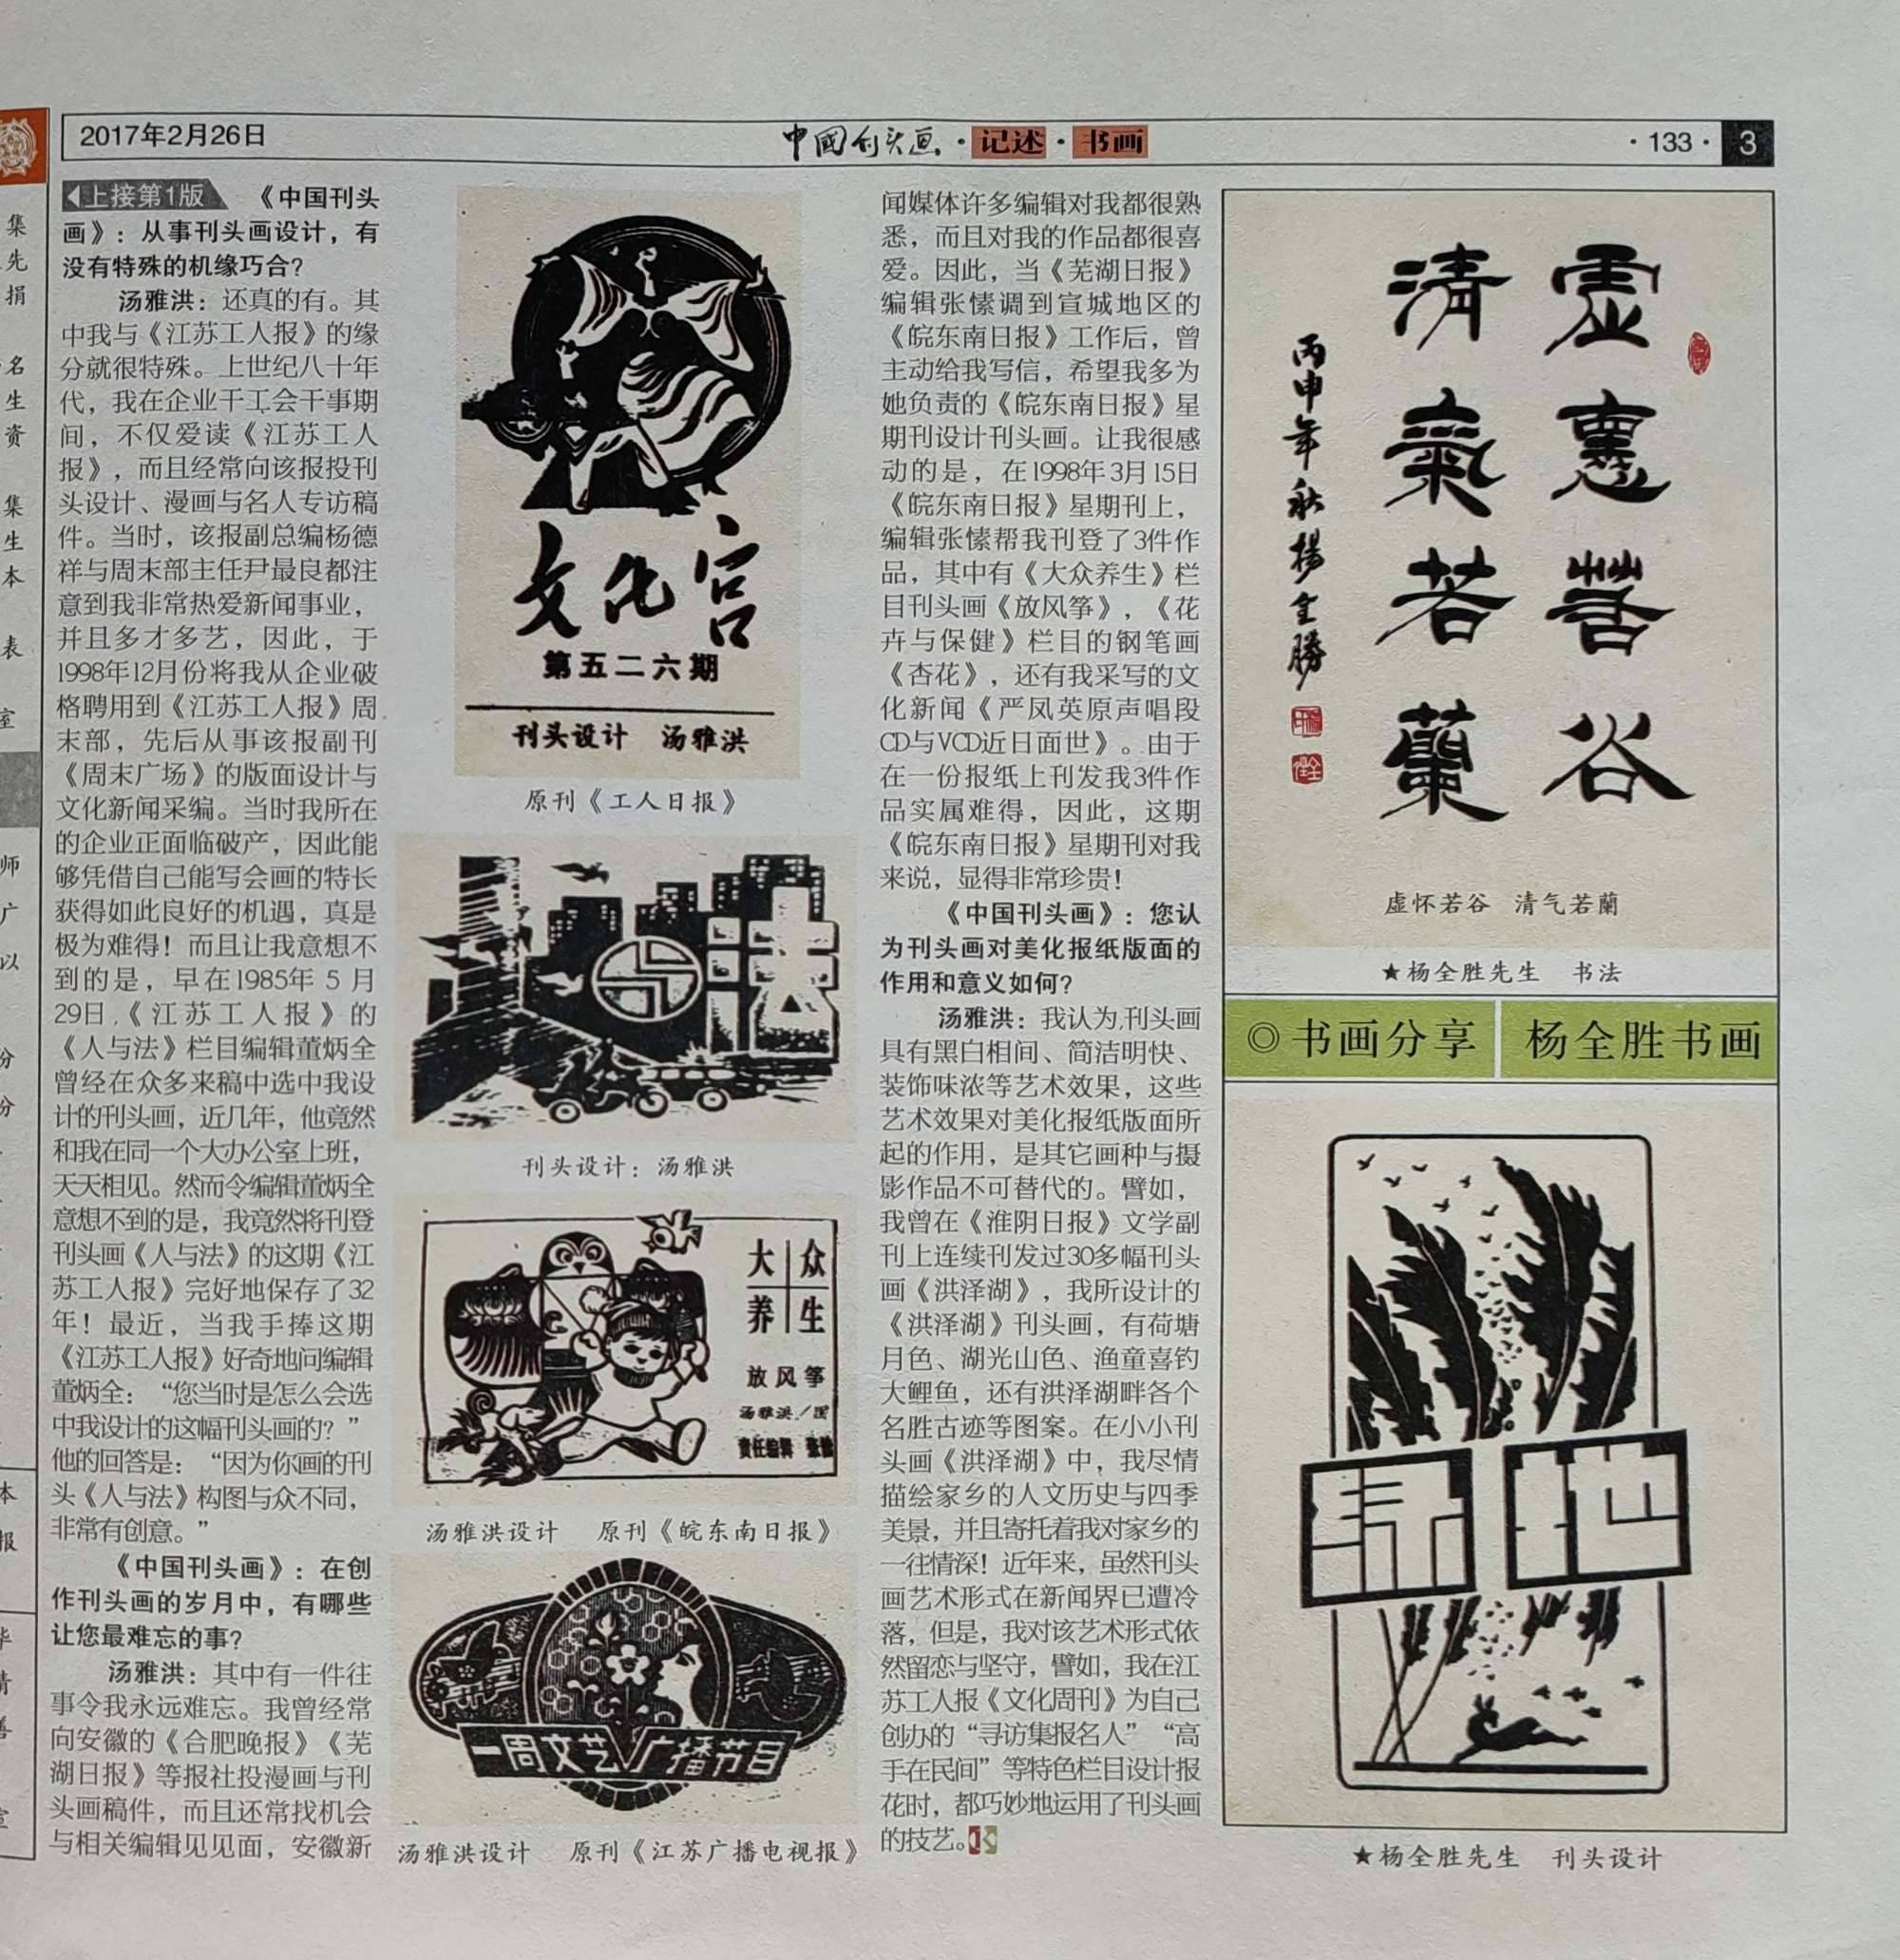 《中国刊头画》报头版头条,刊登该报主编王洪彪对我的专访